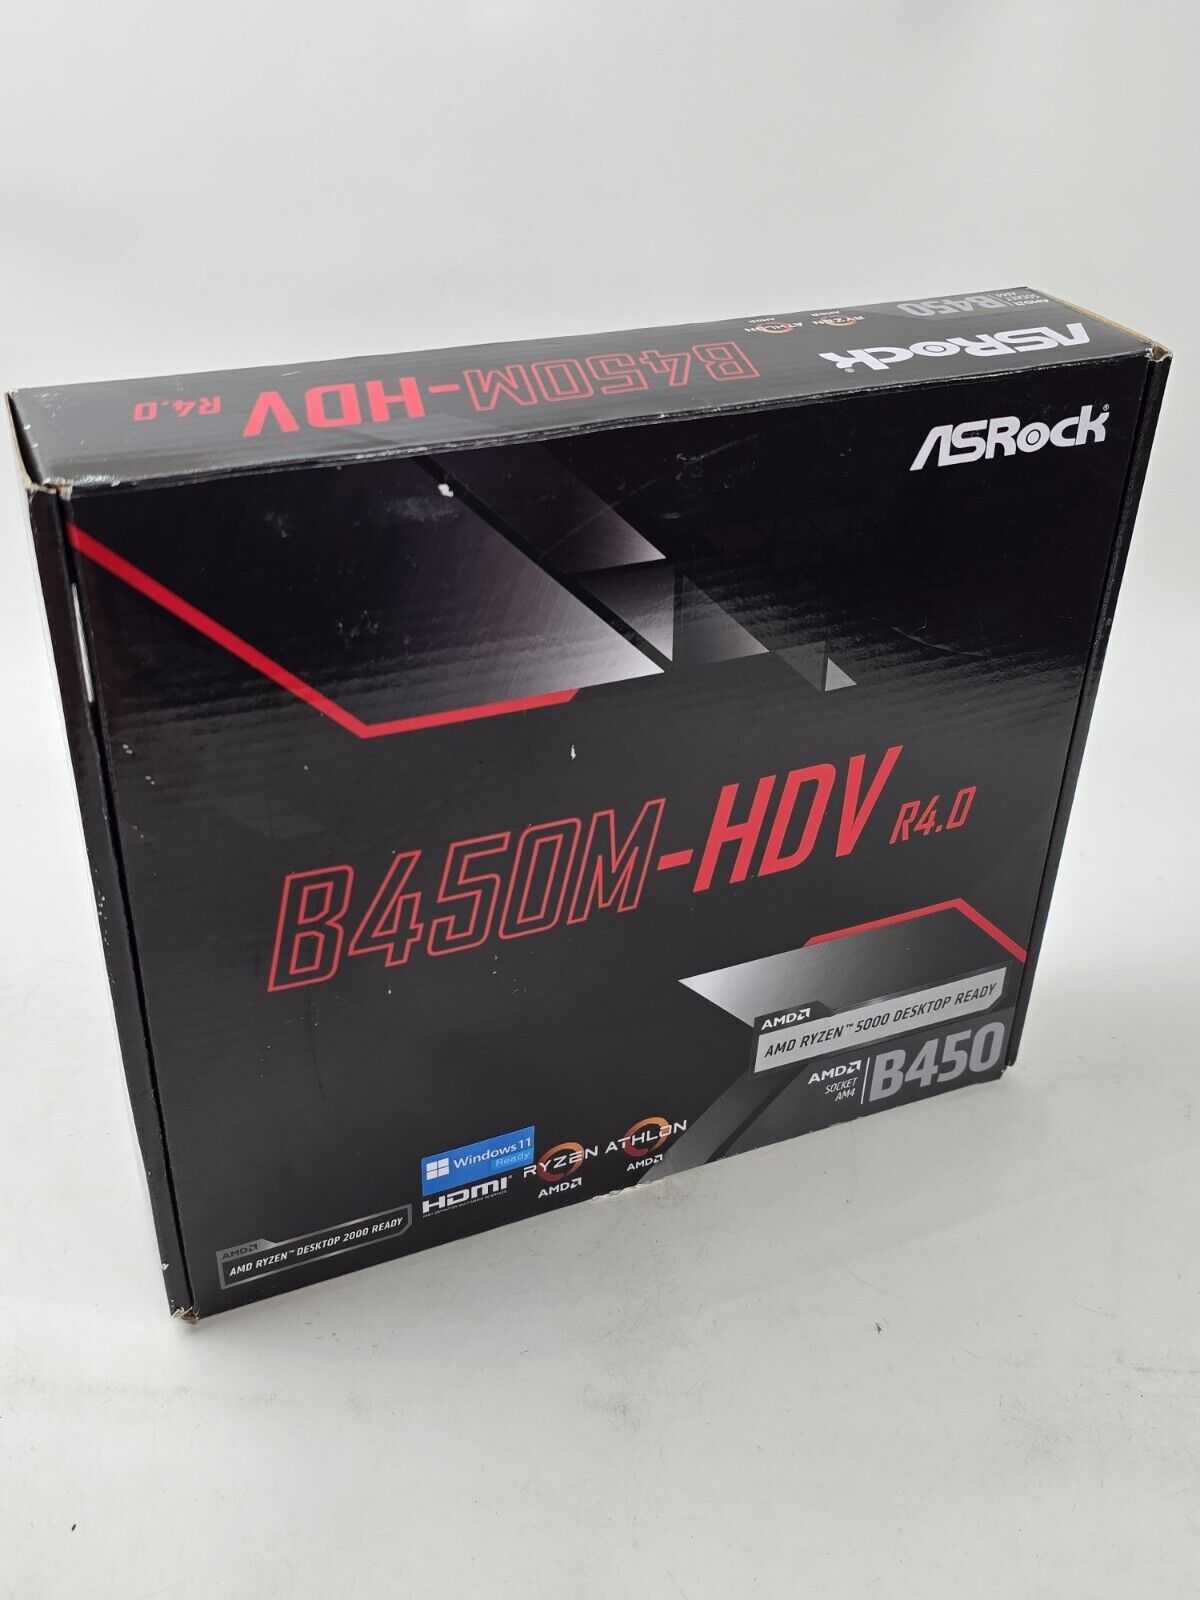 Asrock AMD B450M-HDV R4.0 Micro ATX DDR4 Motherboard